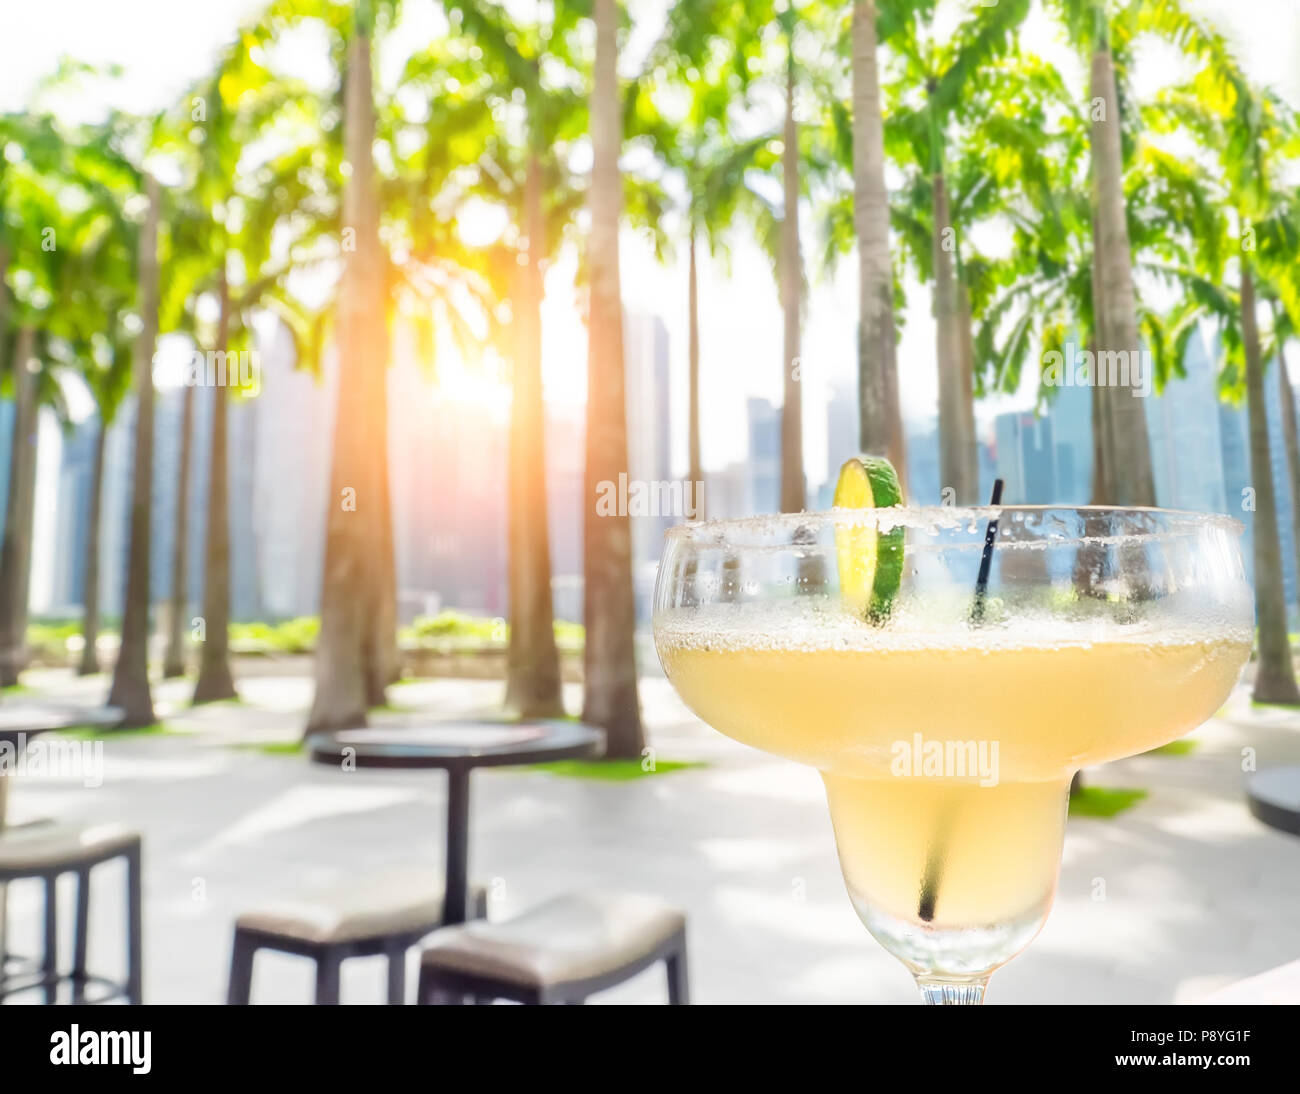 Trinken Margarita Cocktail in Singapur im Freien Cafe. Sonnenuntergang Stadtbild mit Palmen und Wolkenkratzer. Luxus Urlaub in modernen asiatischen Cit Stockfoto